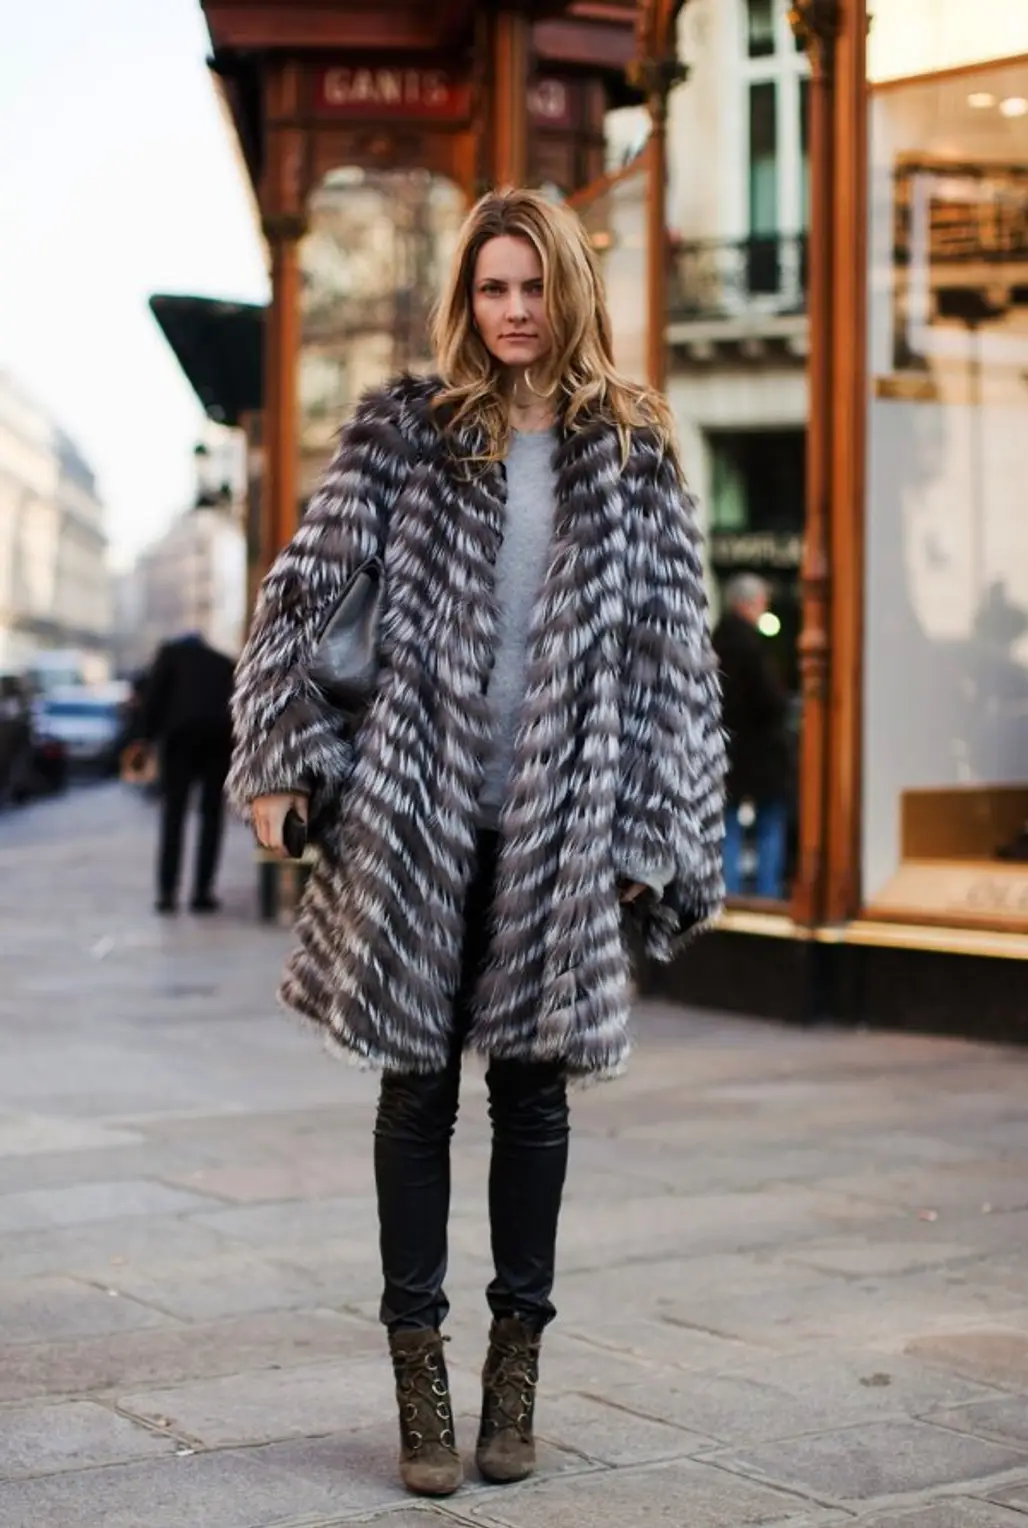 fur clothing,clothing,fur,winter,fashion,